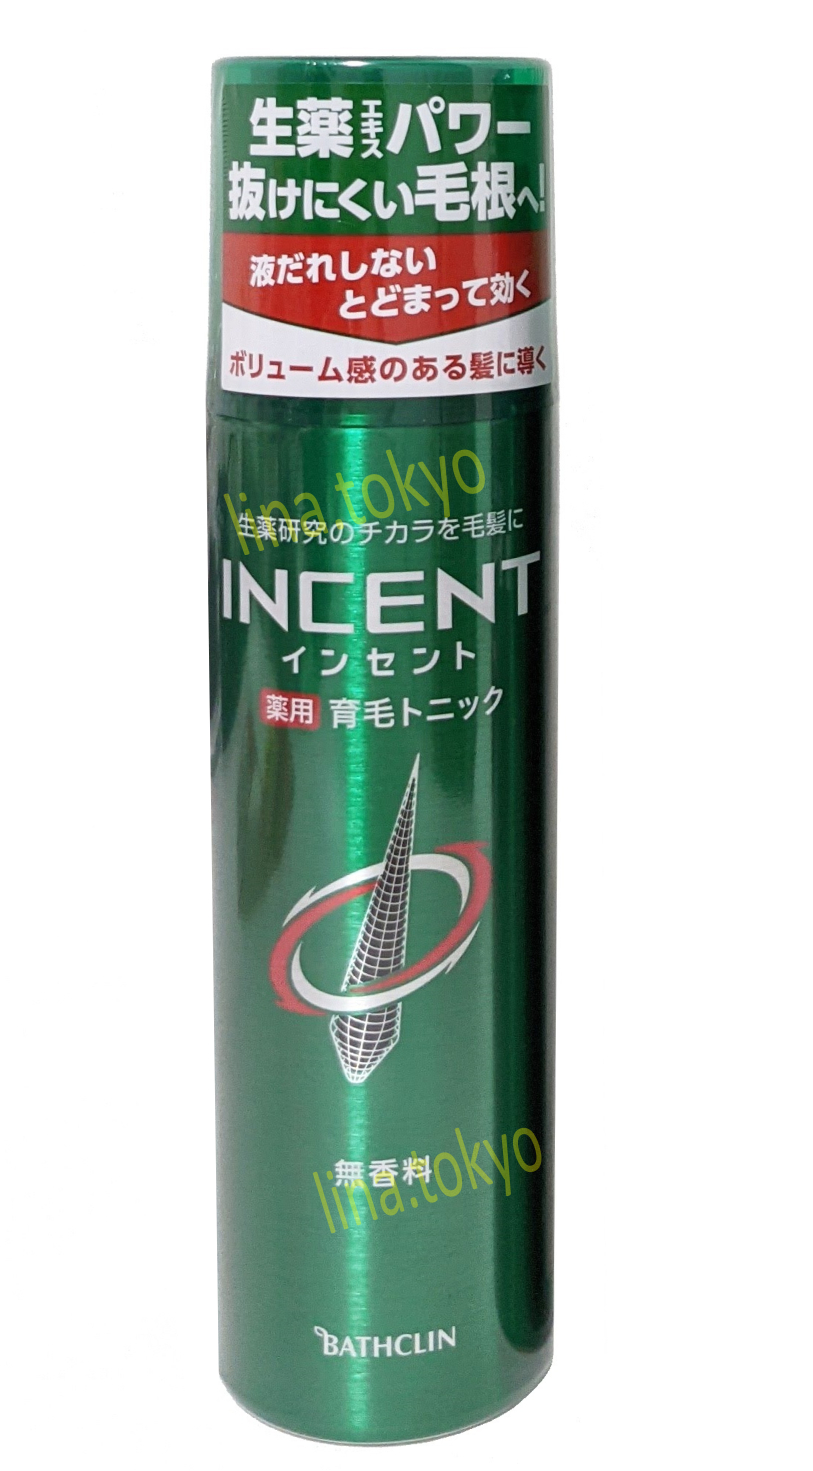 A1005- Incent spray 180g